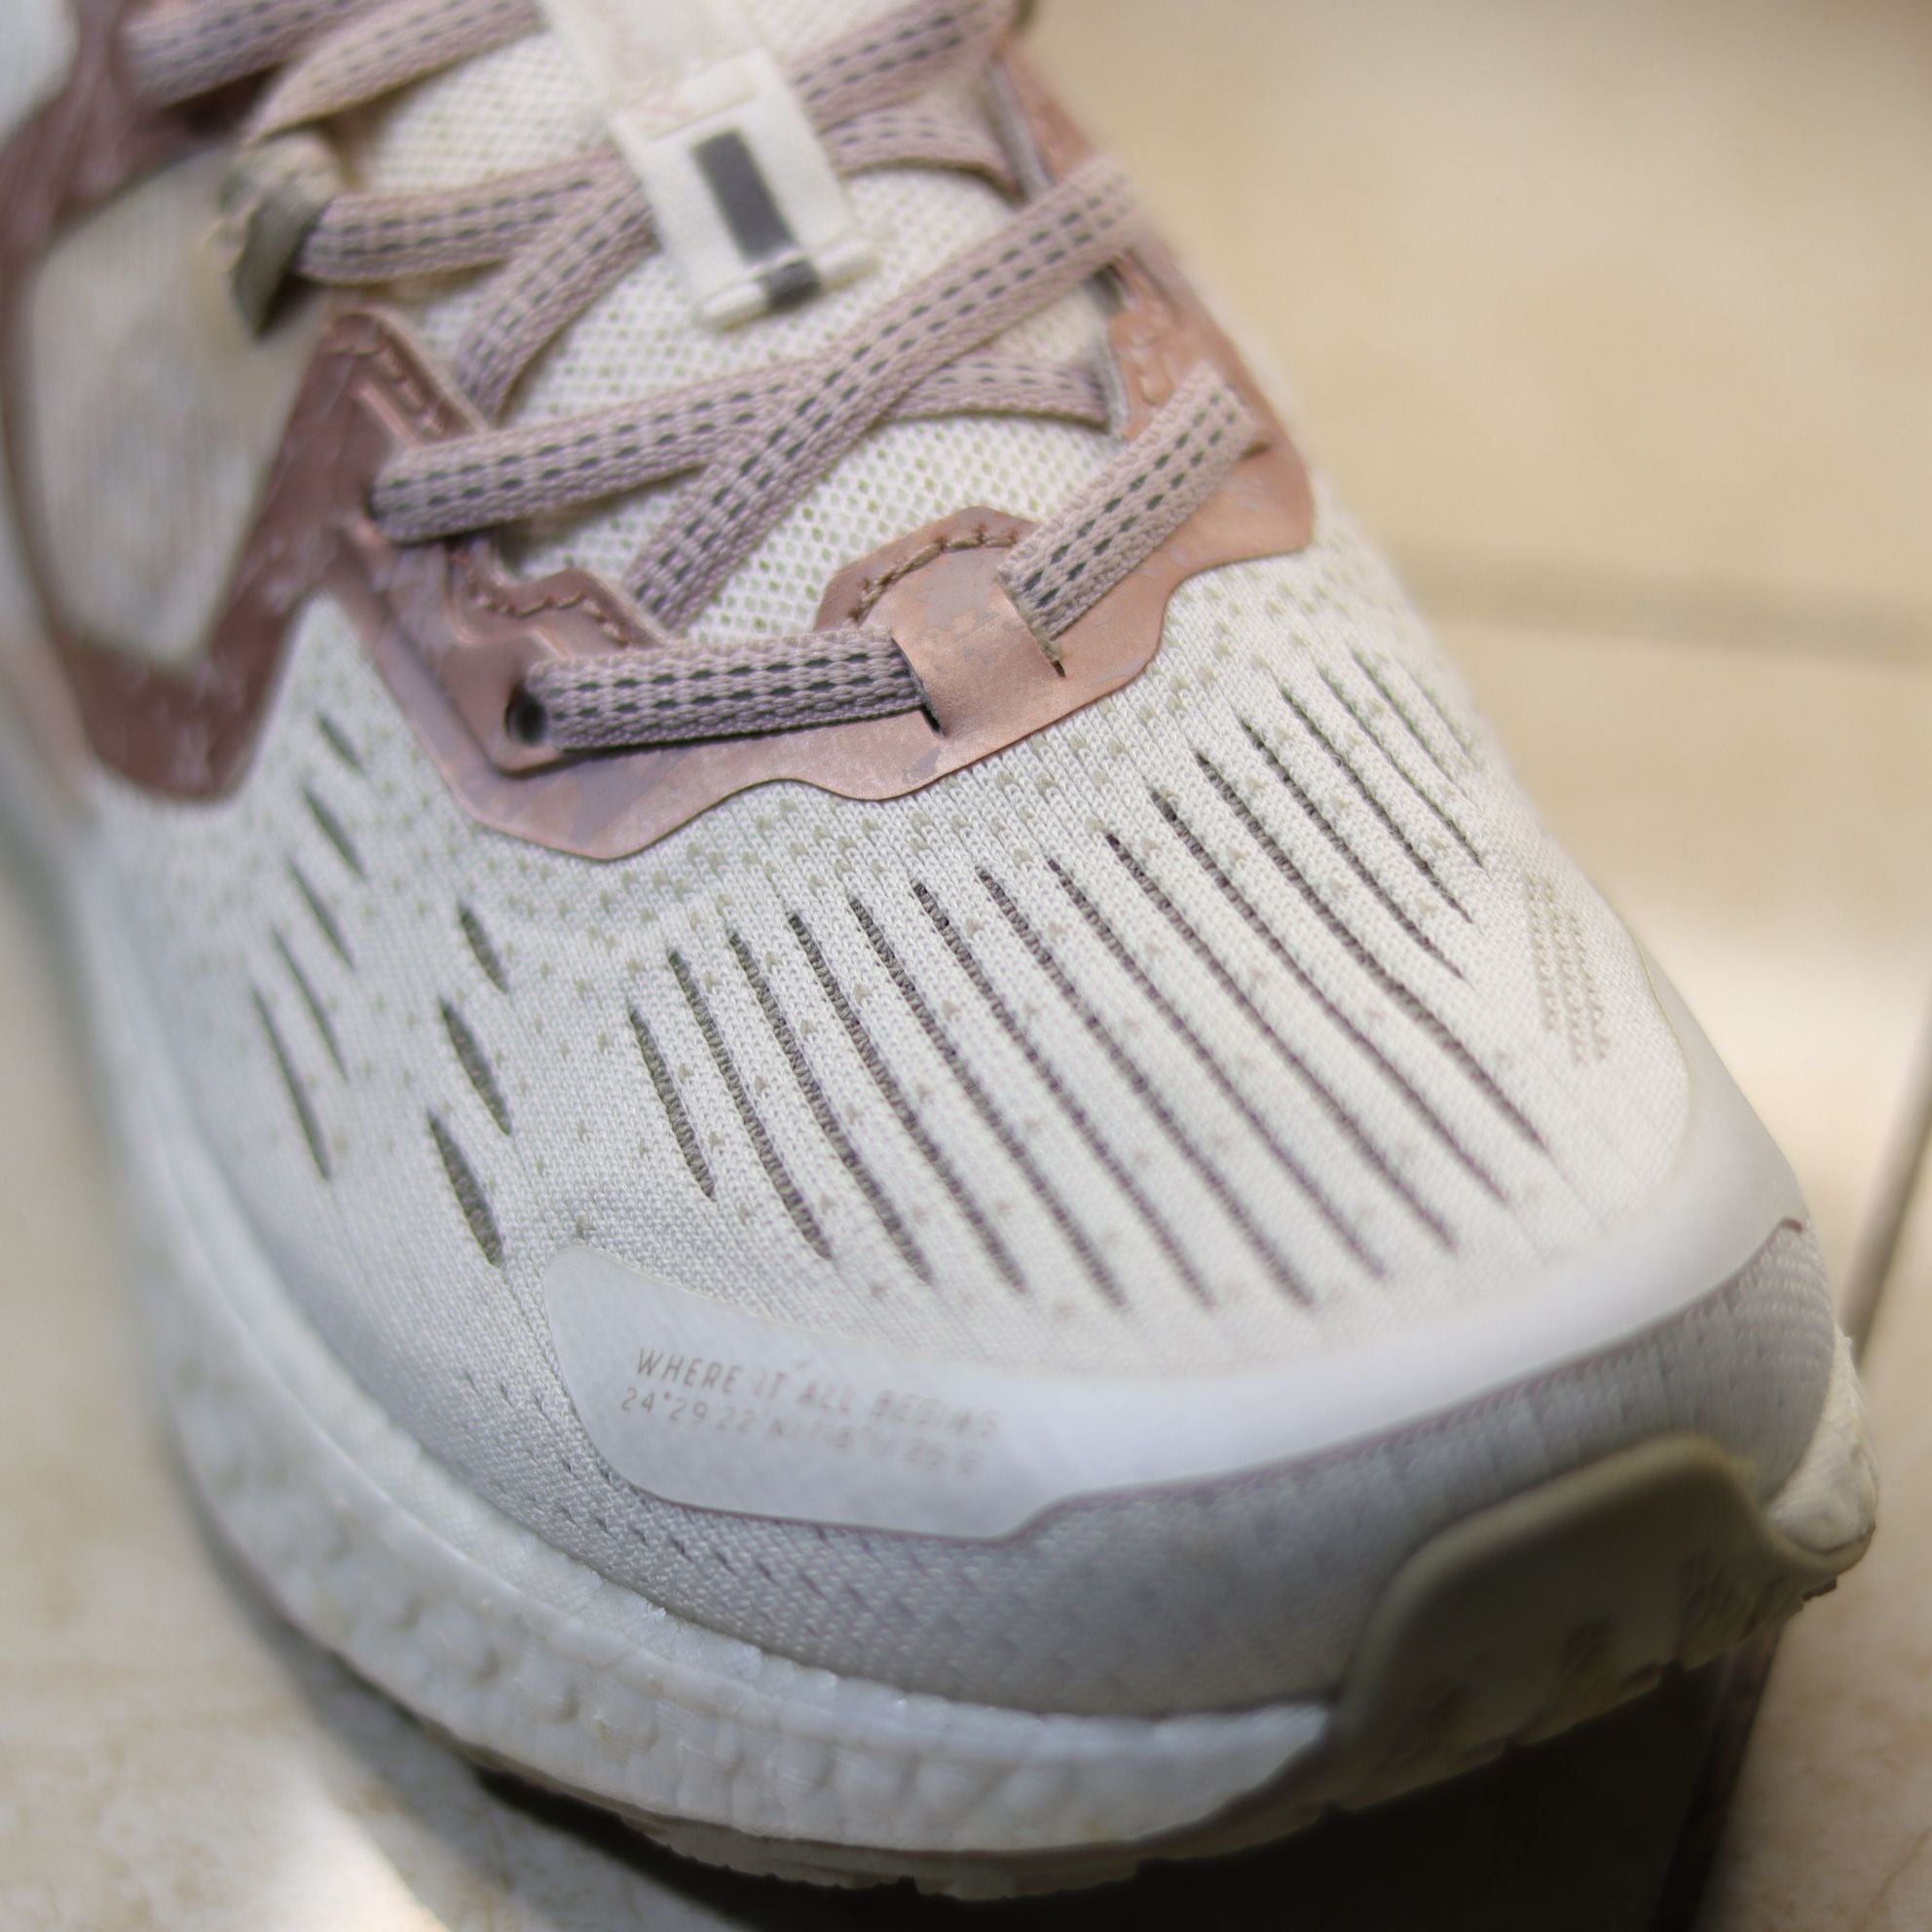 X38 - Women's Dynamic Foam Running Shoe by Xtep®